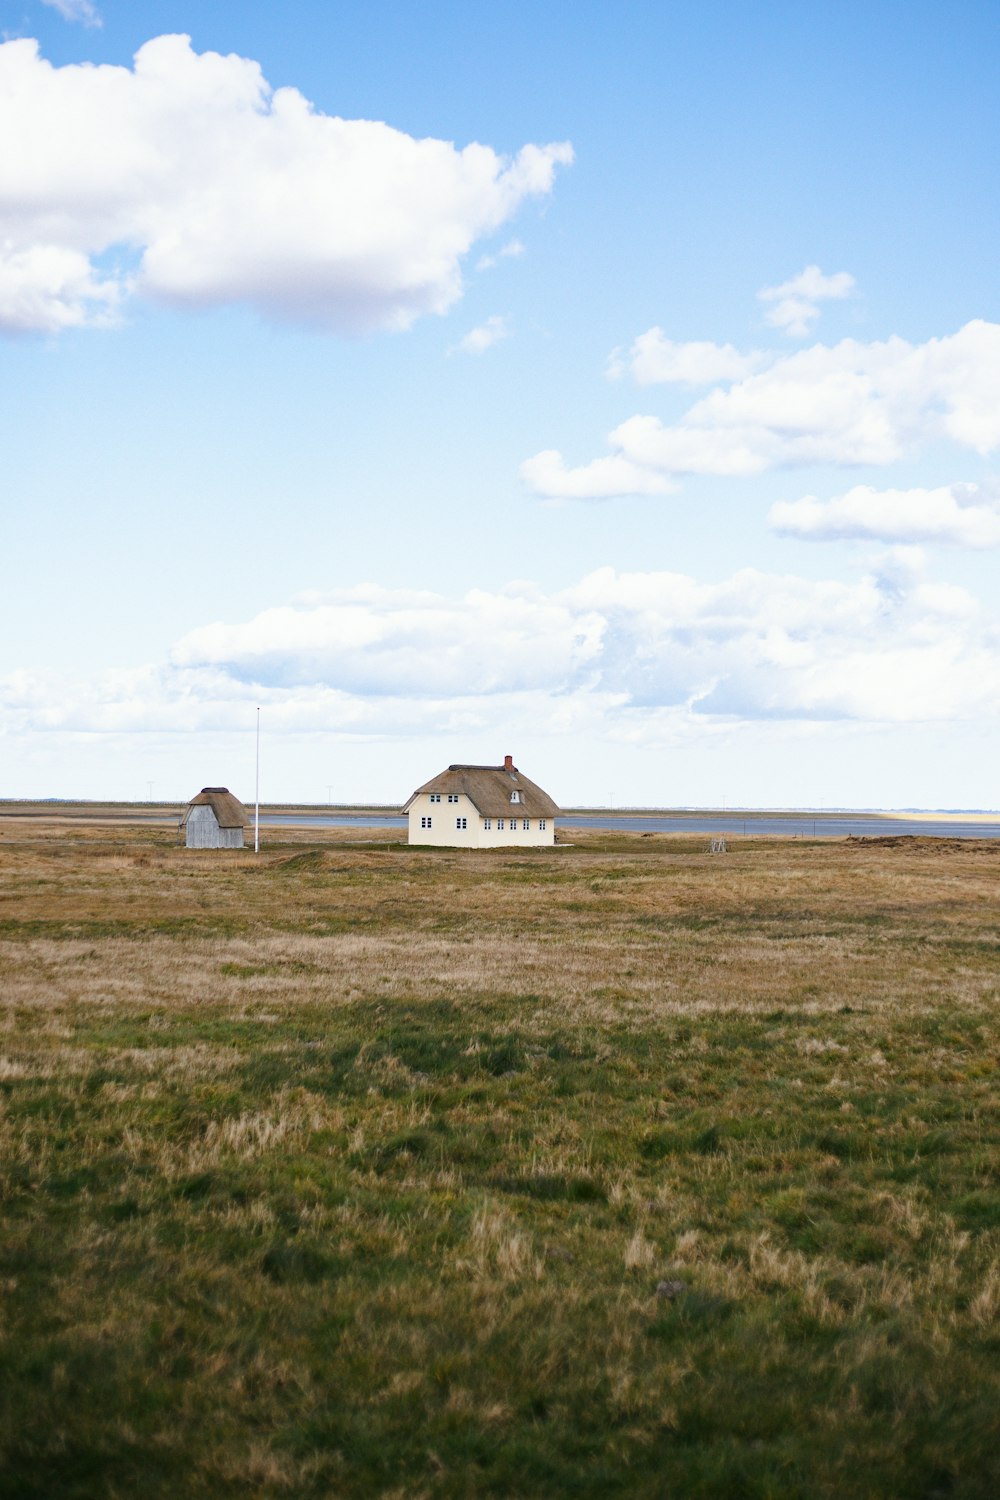 casa branca e marrom no campo de grama verde sob nuvens brancas durante o dia